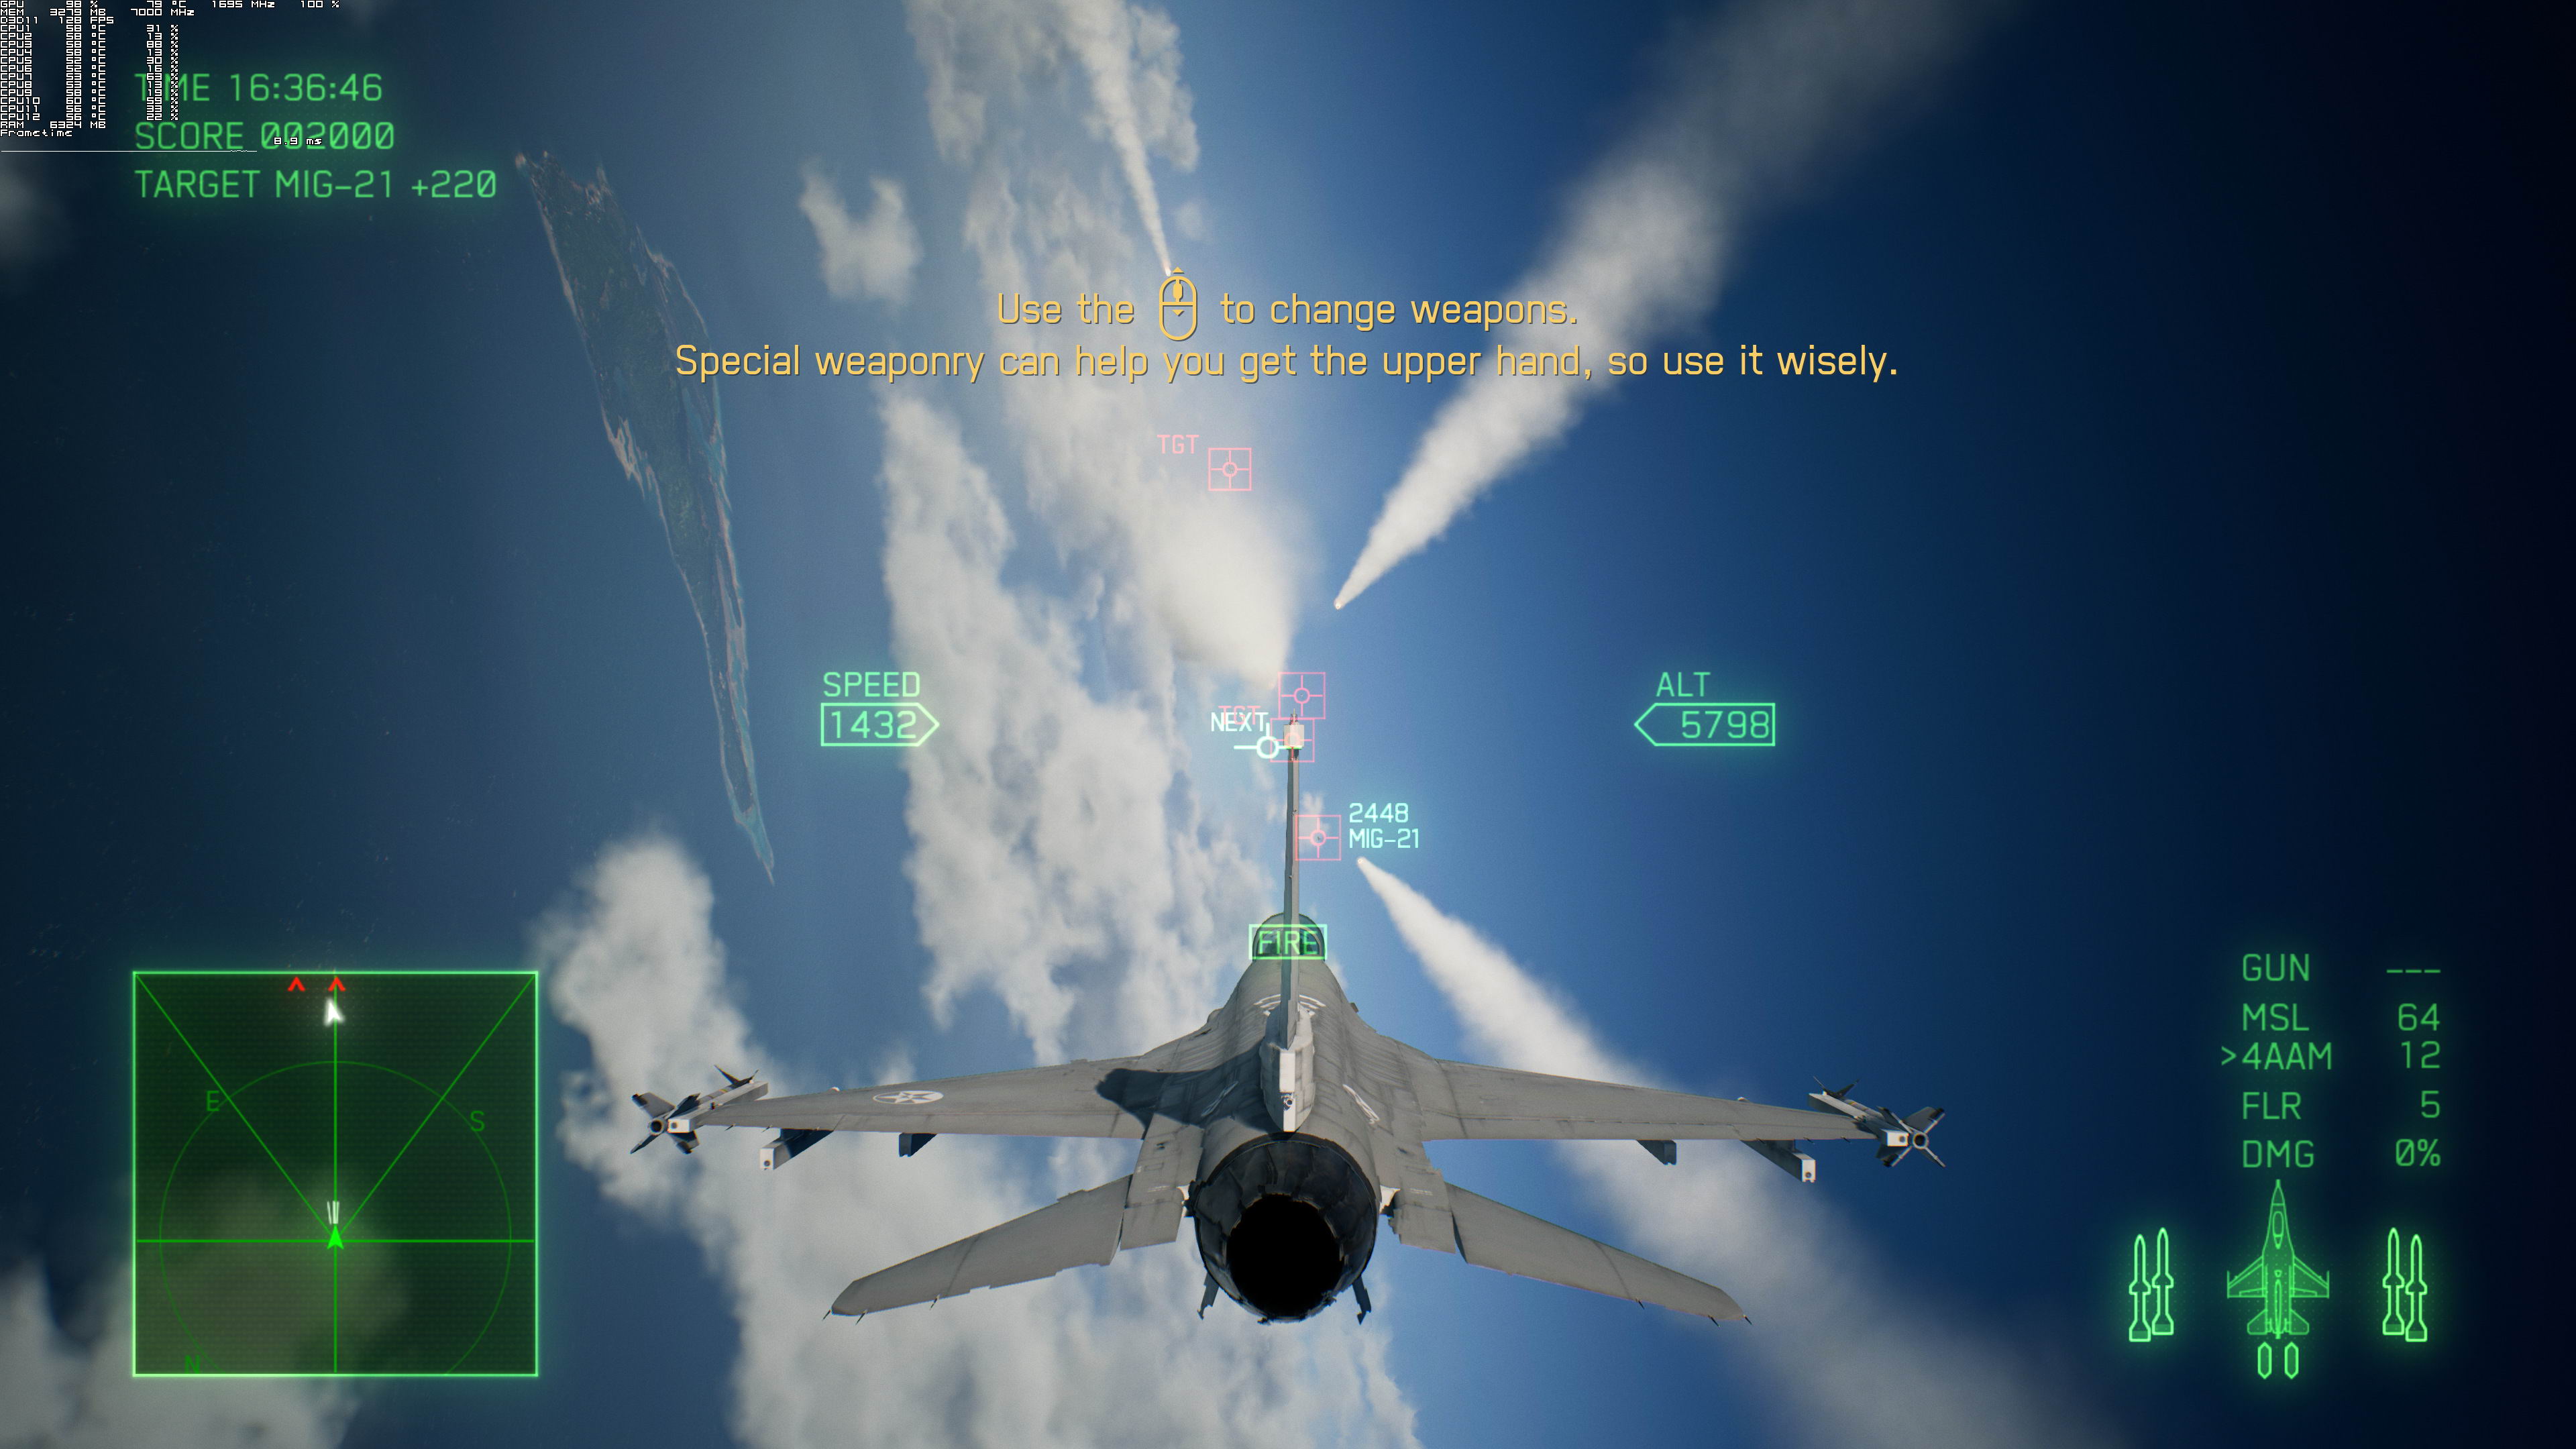 《空戰奇兵7》PC版測試截圖 2080Ti運行效果超神